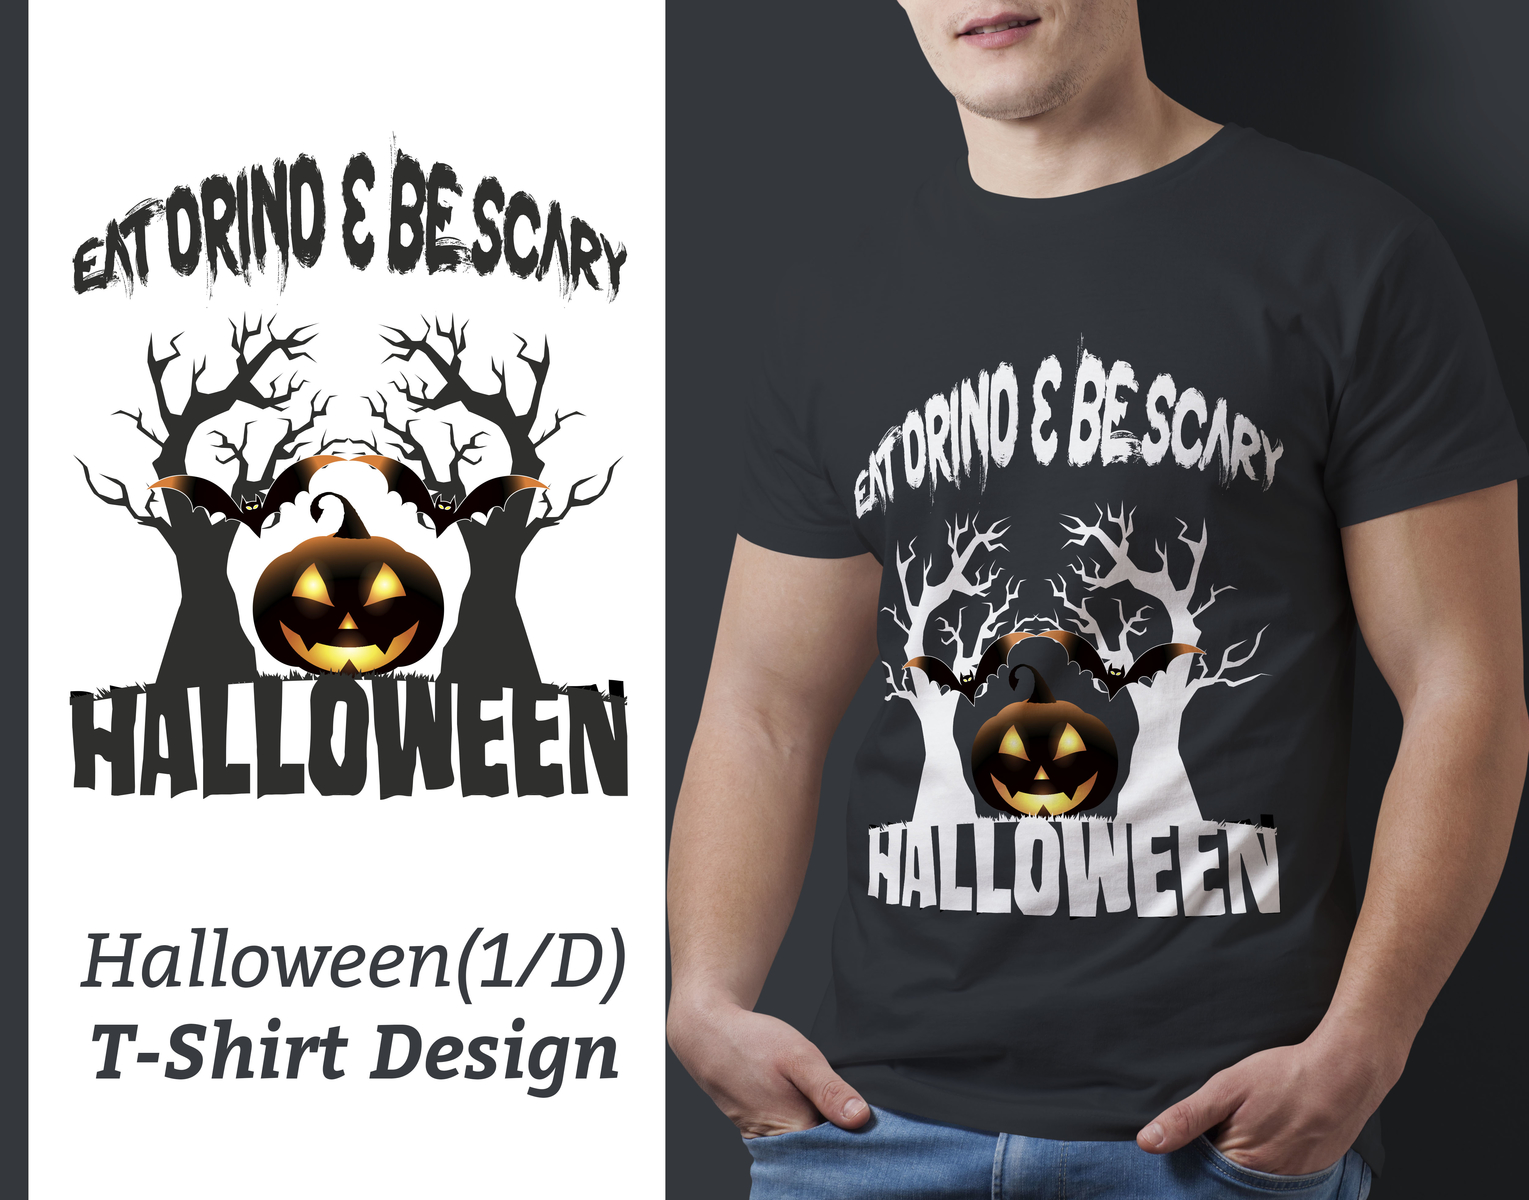 Halloween TShirt Design, Halloween, TShirt by Imran Hasan Imu on Dribbble